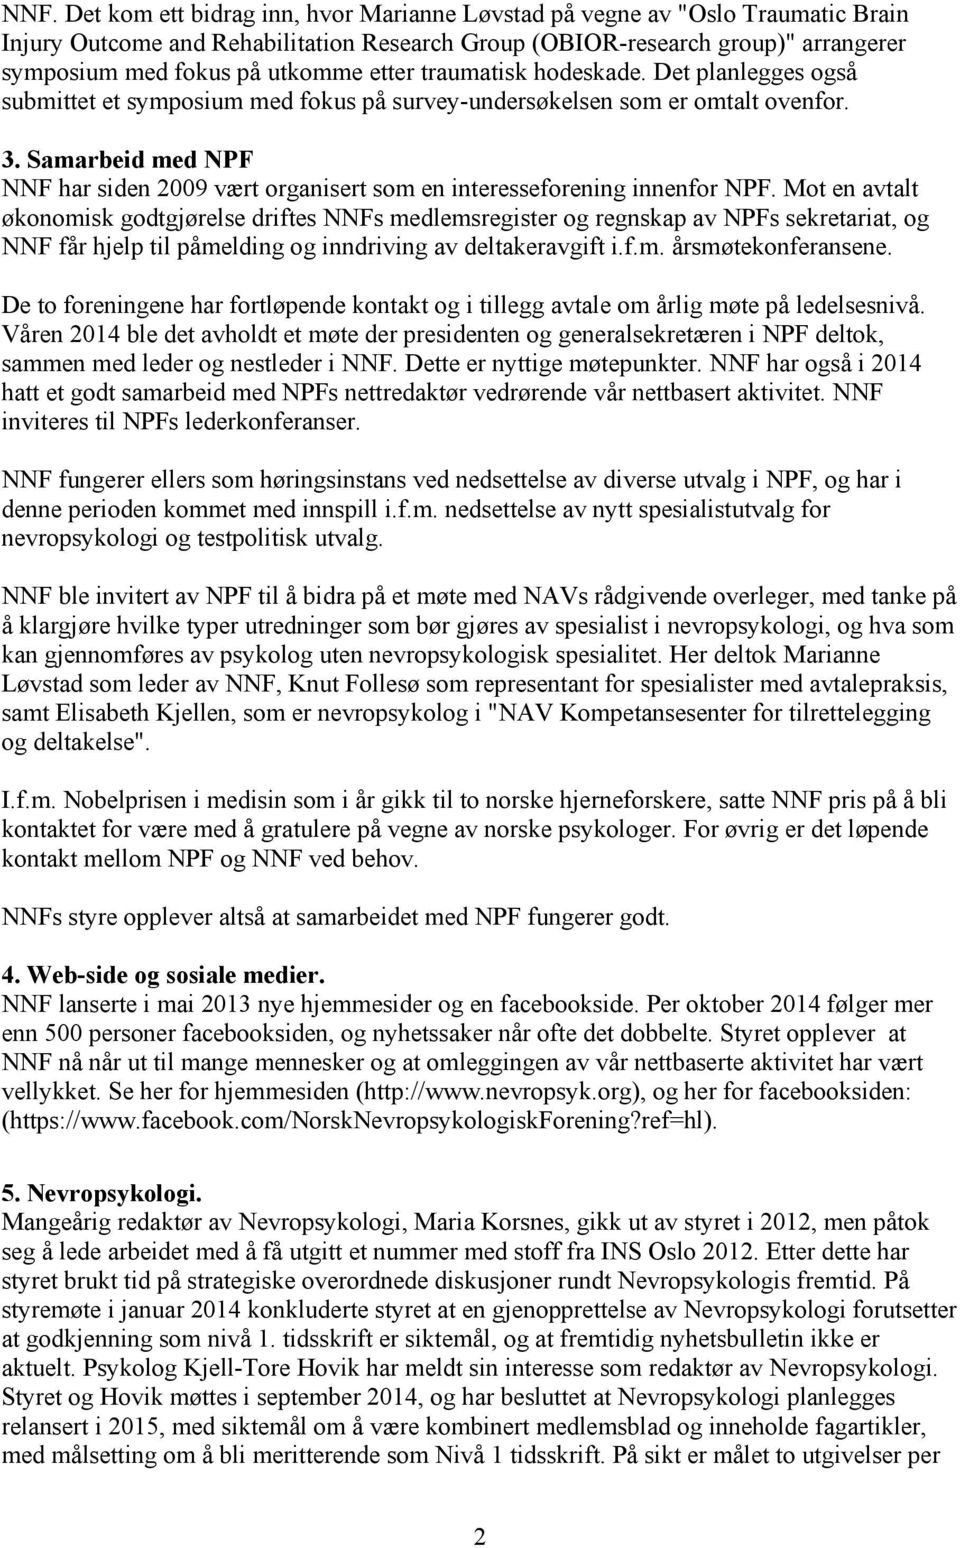 Samarbeid med NPF NNF har siden 2009 vært organisert som en interesseforening innenfor NPF.